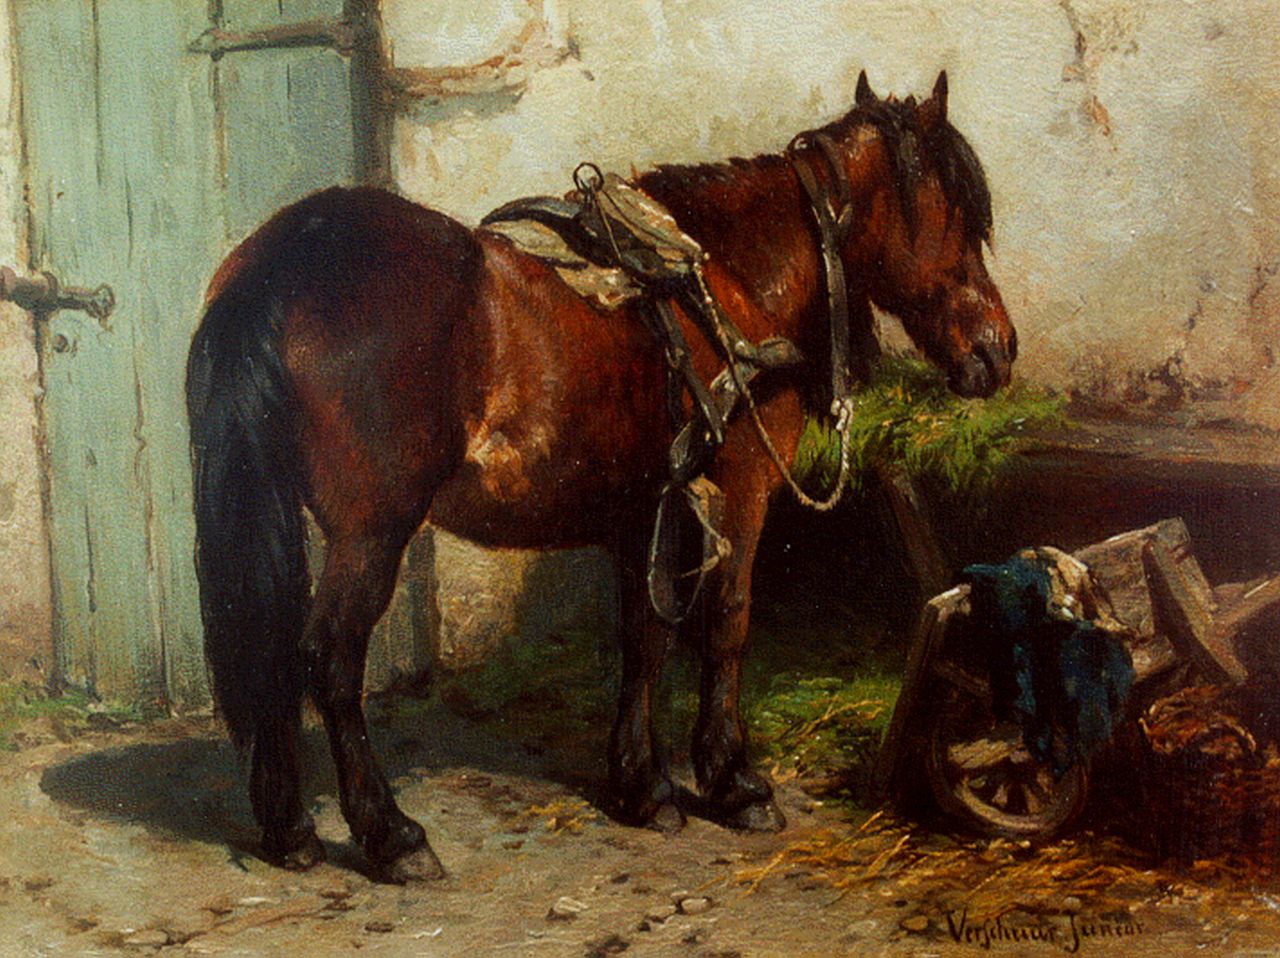 Verschuur jr. W.  | Wouter Verschuur jr., A horse on a yard, oil on panel 15.2 x 20.3 cm, signed l.r.